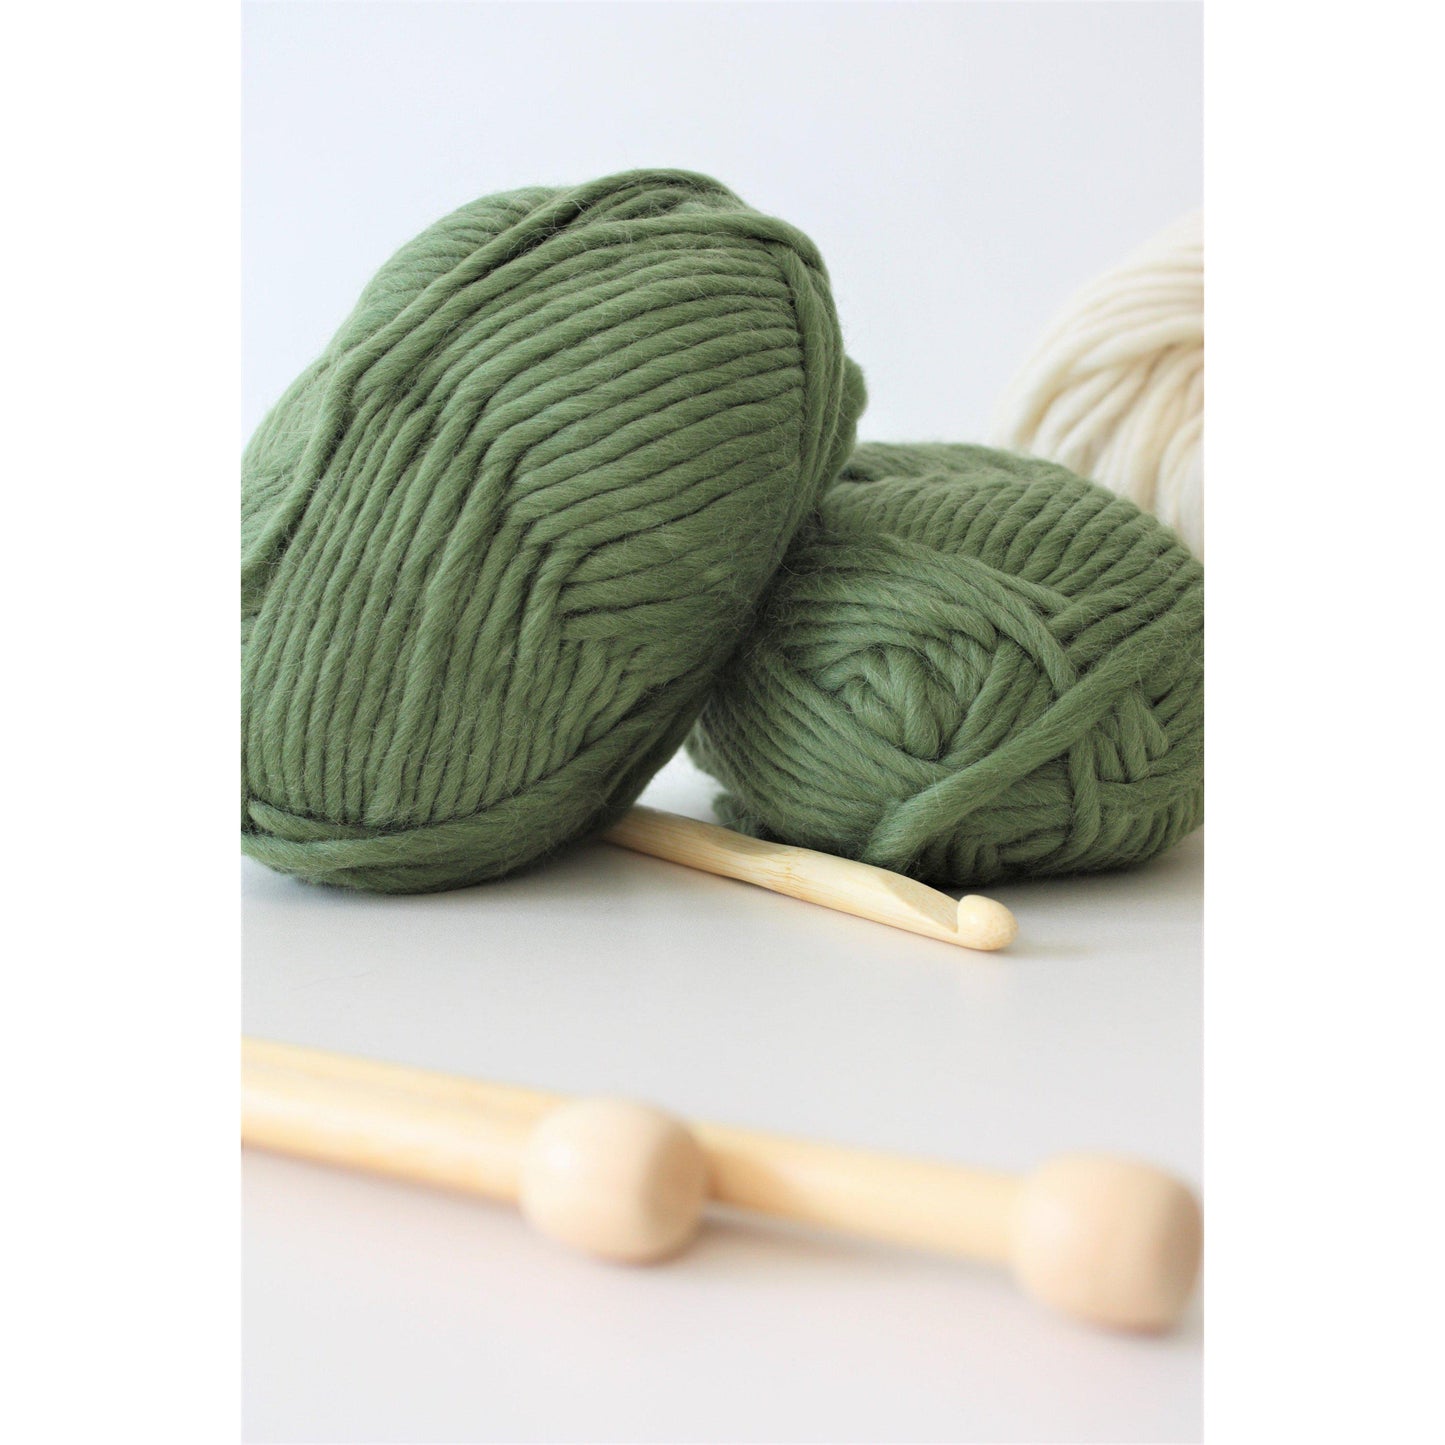 Super Chunky Pure Merino Wool Knitting Yarn - Olive Green - King & Eye